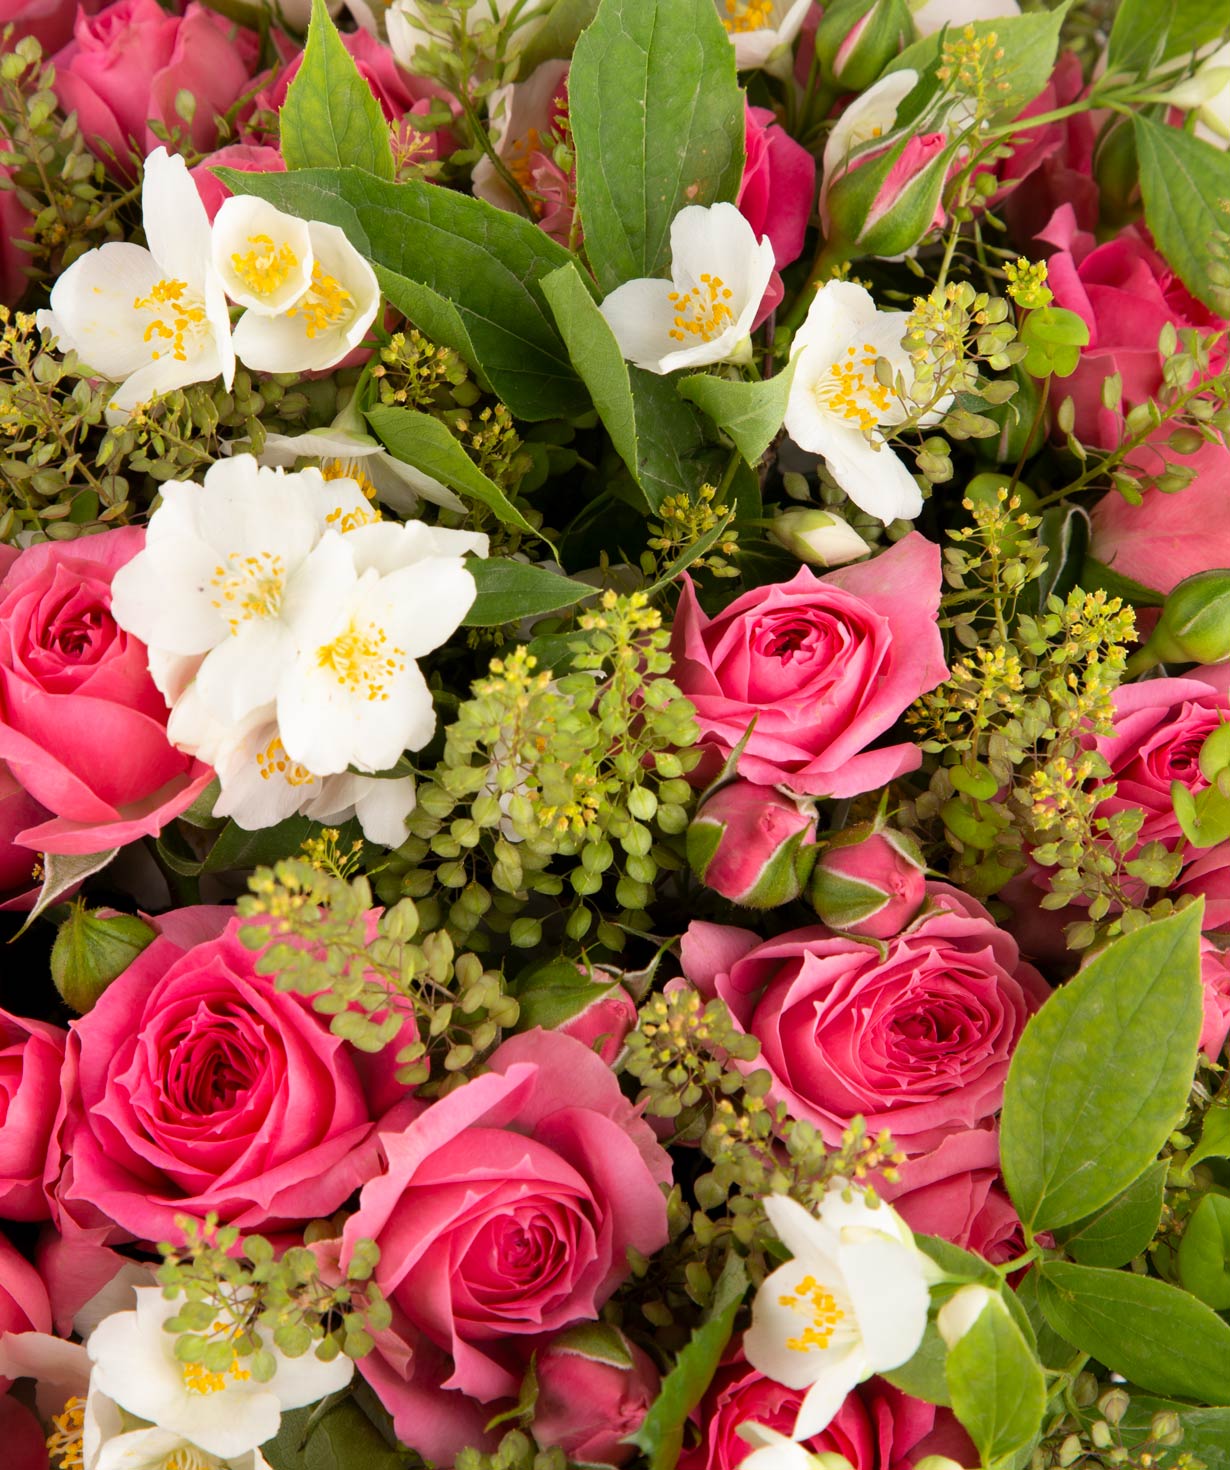 Ծաղկեփունջ «Մյուլուզ» փնջային վարդերով և դաշտային ծաղիկներով